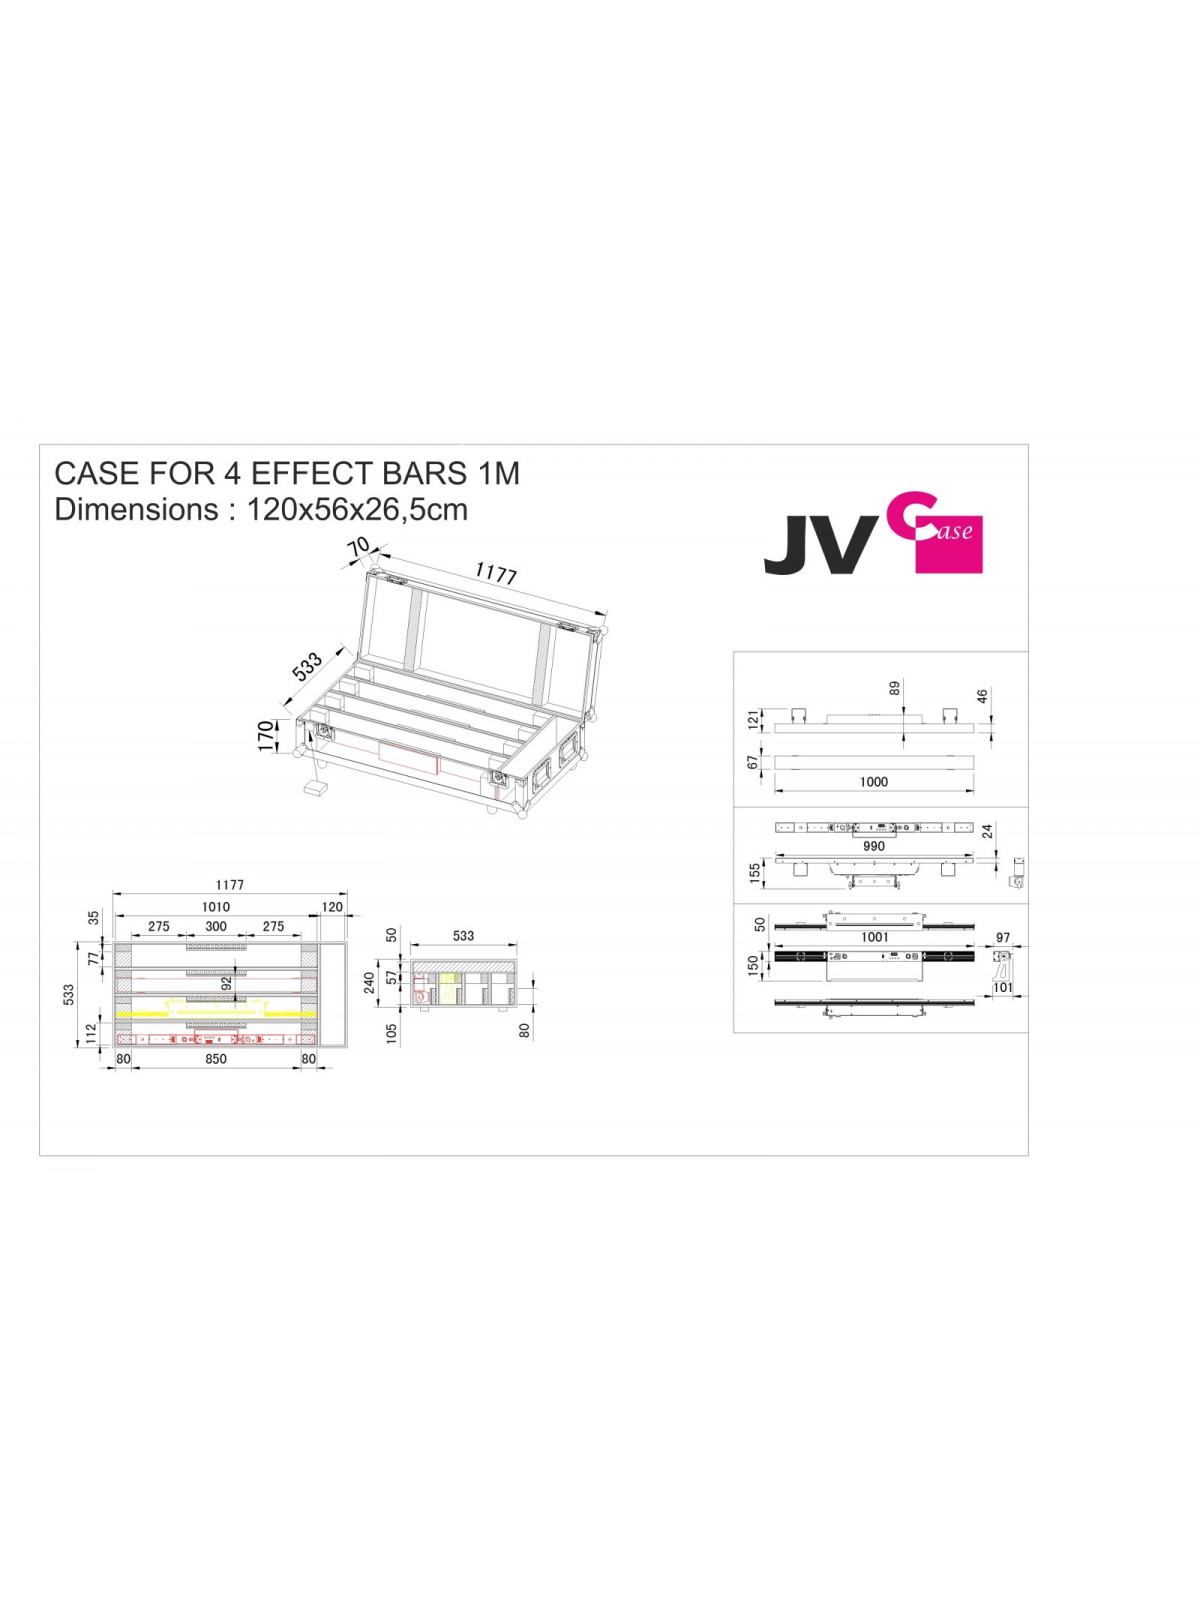 JV Case - Case for 4 effect bars 1M